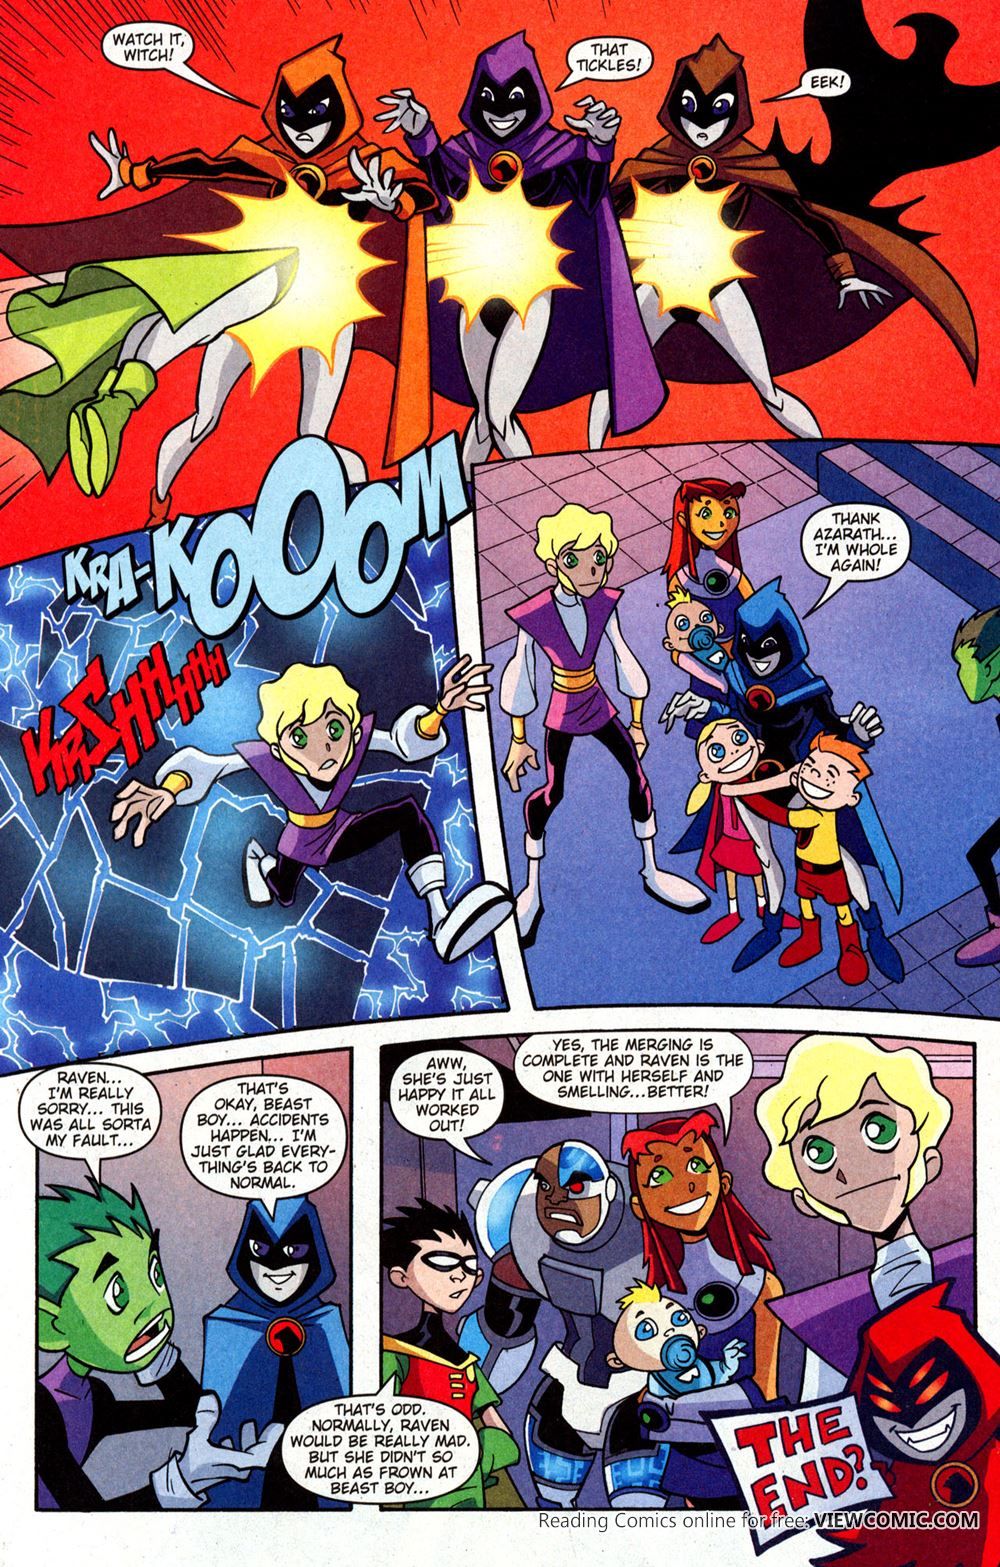 Thunderbird reccomend Teen titans online comics